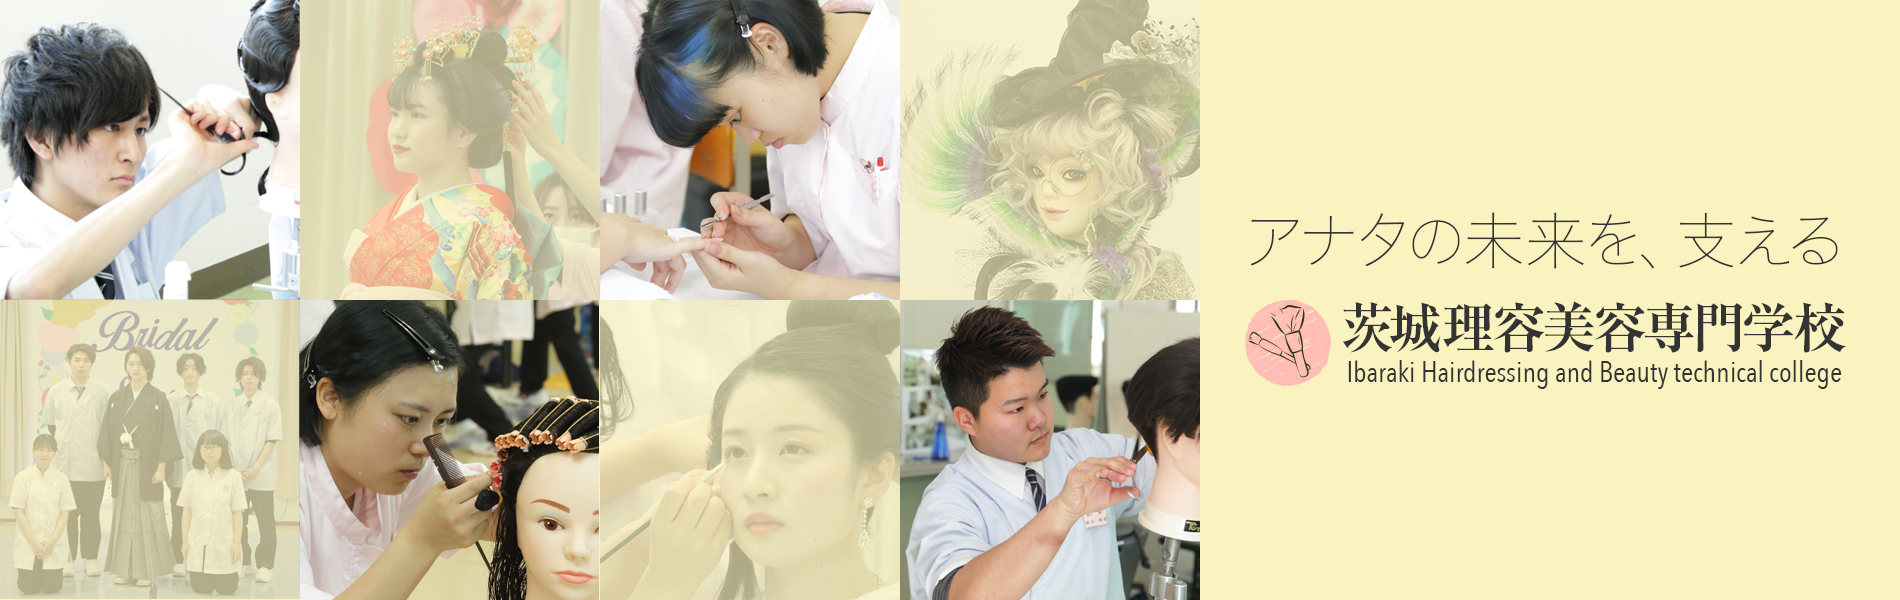 茨城理容美容専門学校には理容科、美容科、２つの学科があります。